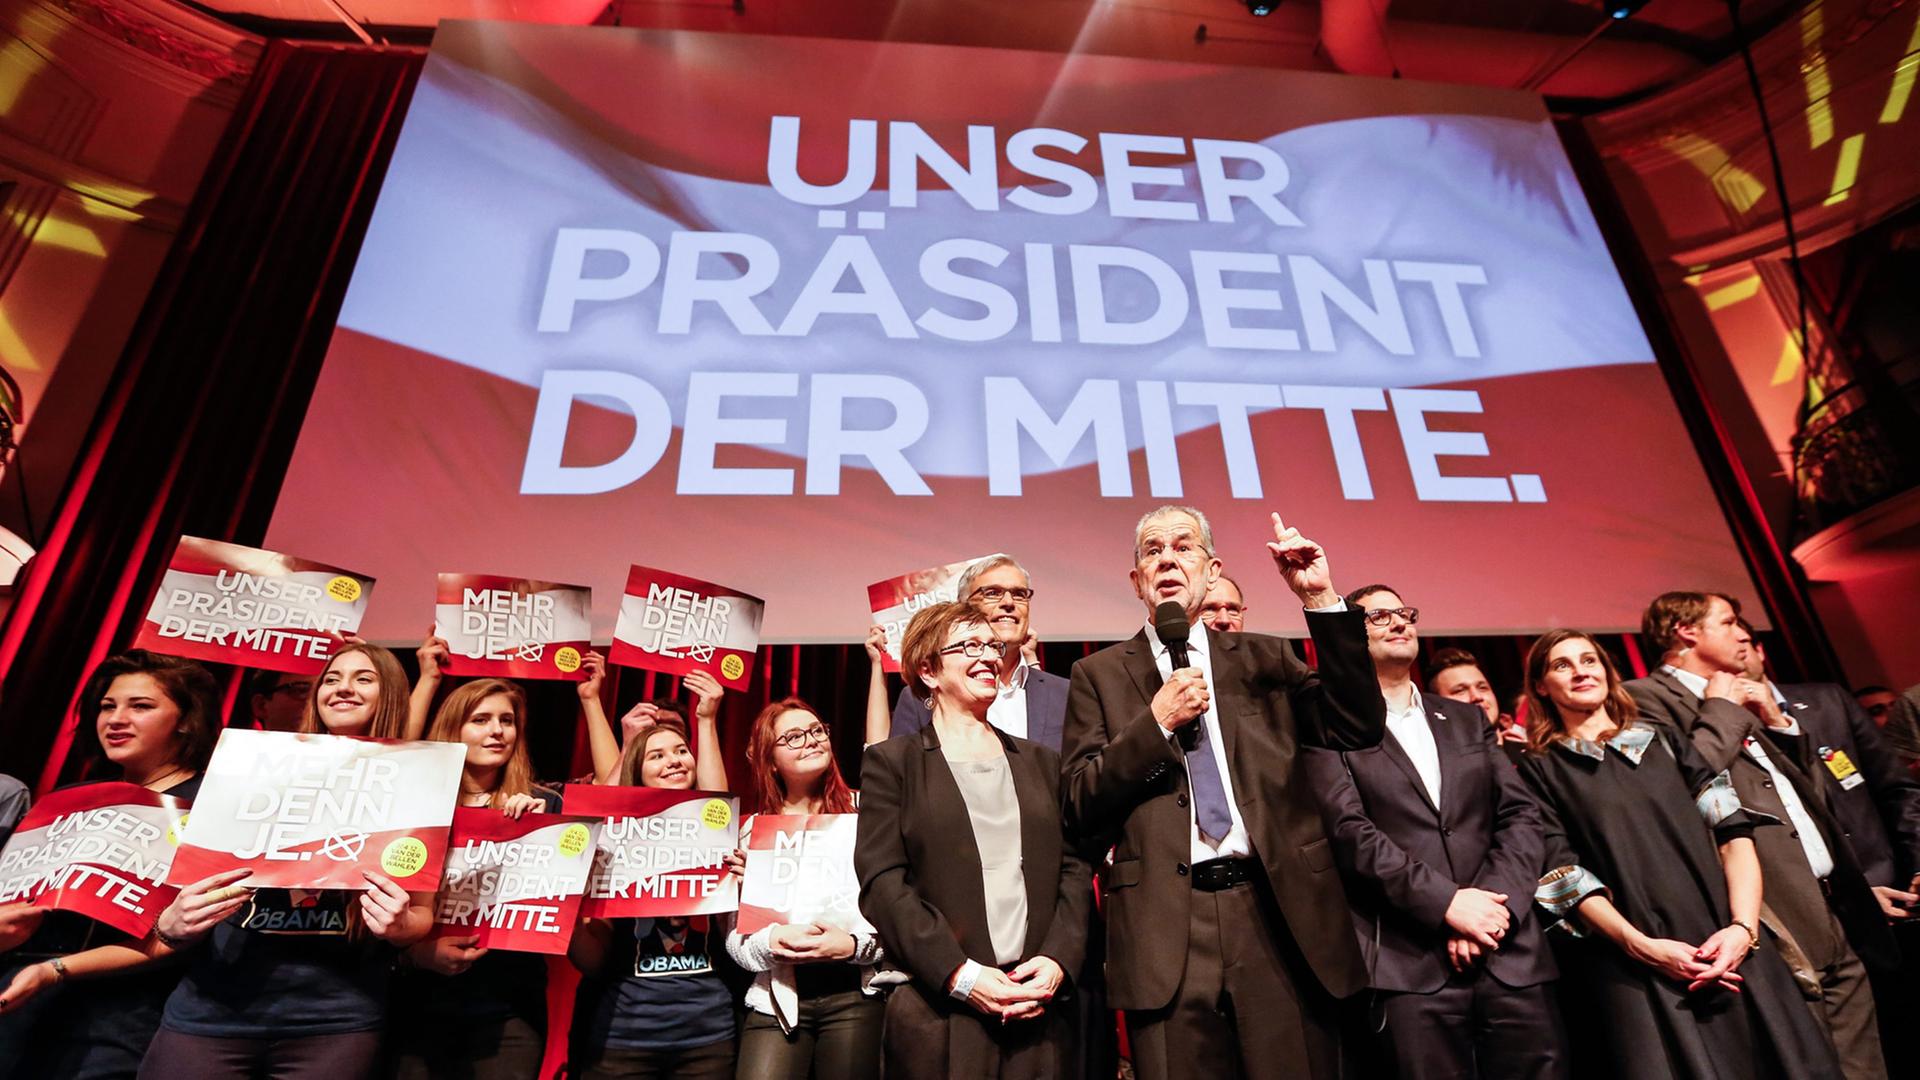 Der österreichische Präsidentschafskandidat Alexander van der Bellen mit seiner Ehefrau Doris Schmidbauer und seinen Anhängern nach dem Wahlerfolg in Wien.